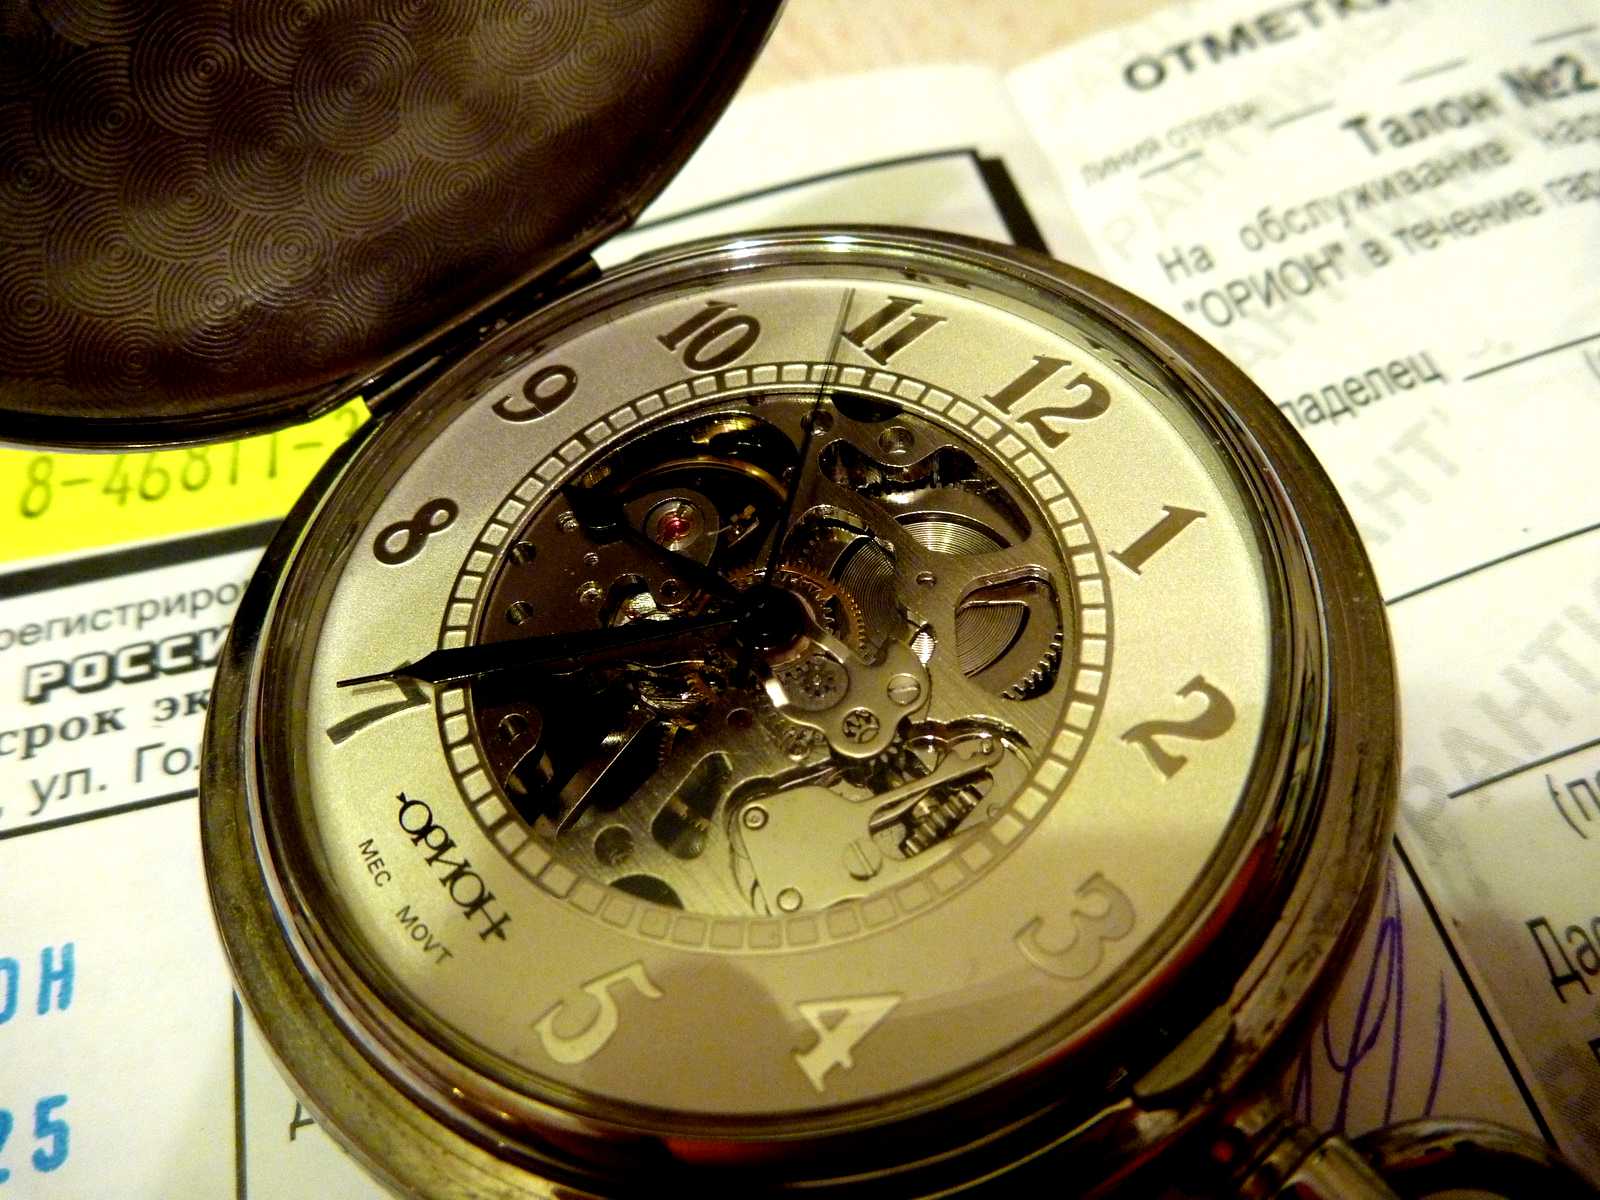 Развлечения часы. Часы Орион скелетон. Карманные часы Орион скелетон. Орион часы мужские карманные. Часы Орион скелетон 2002.